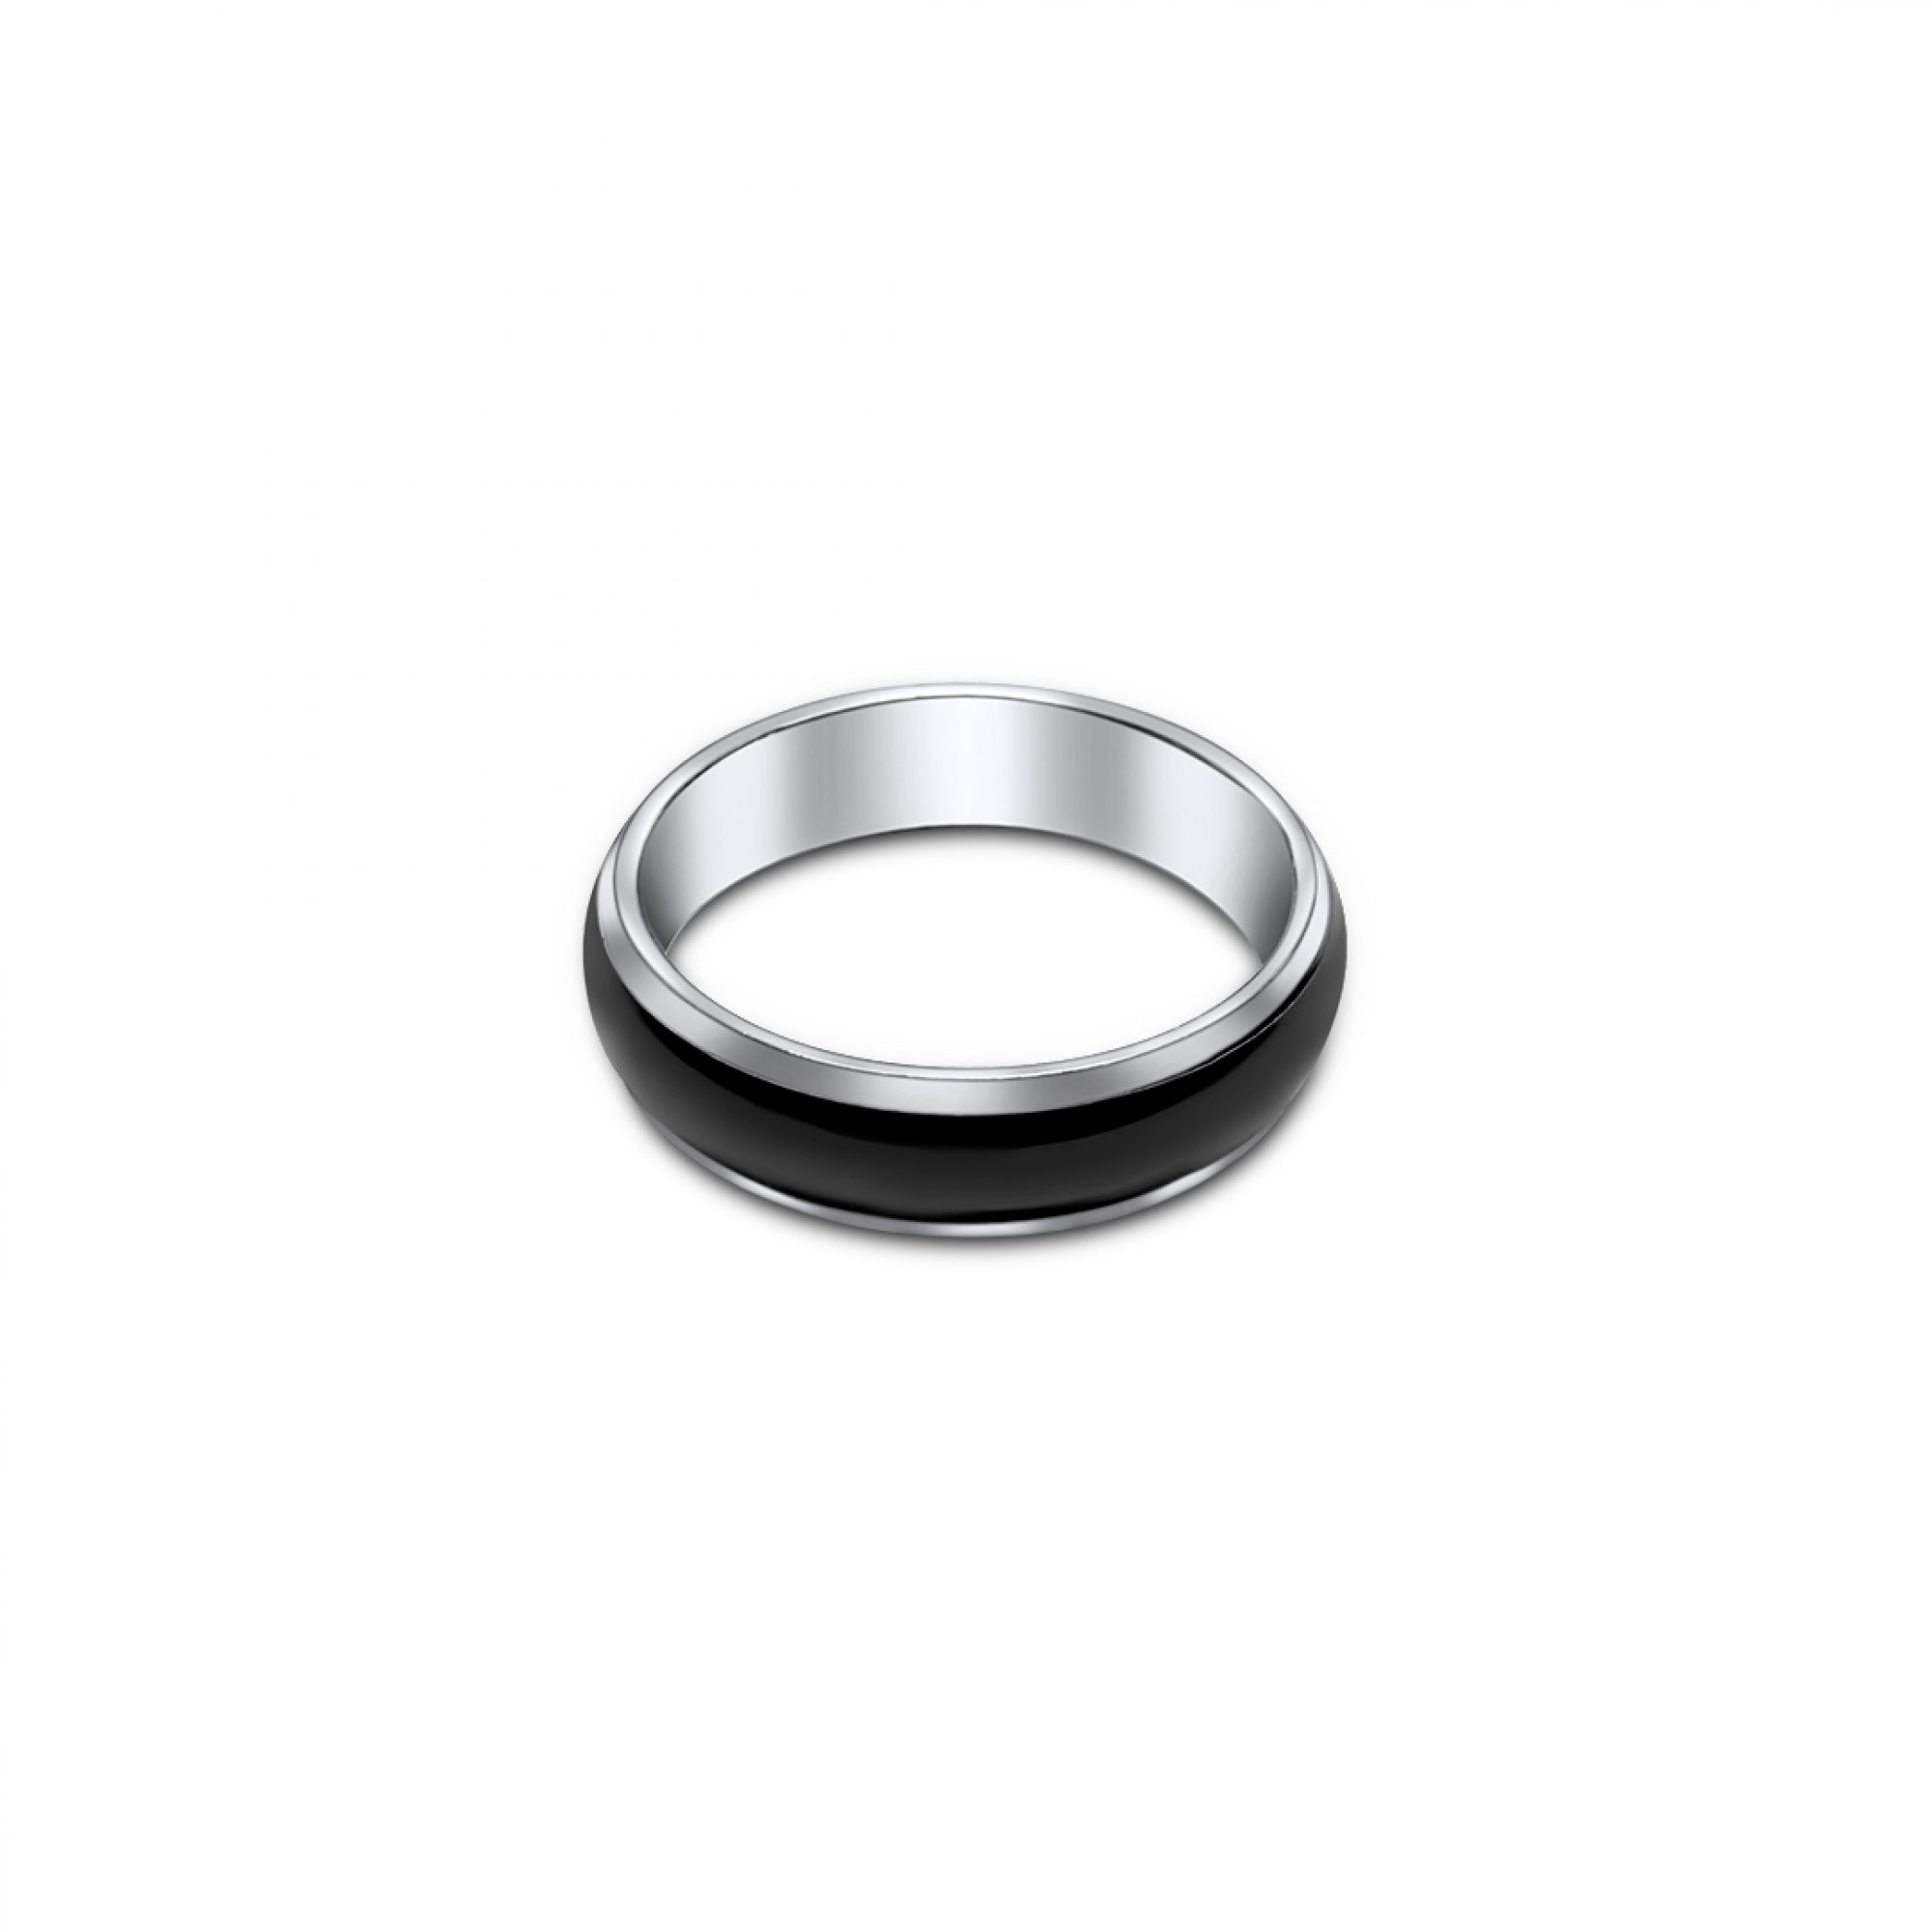 Black centered steel ring